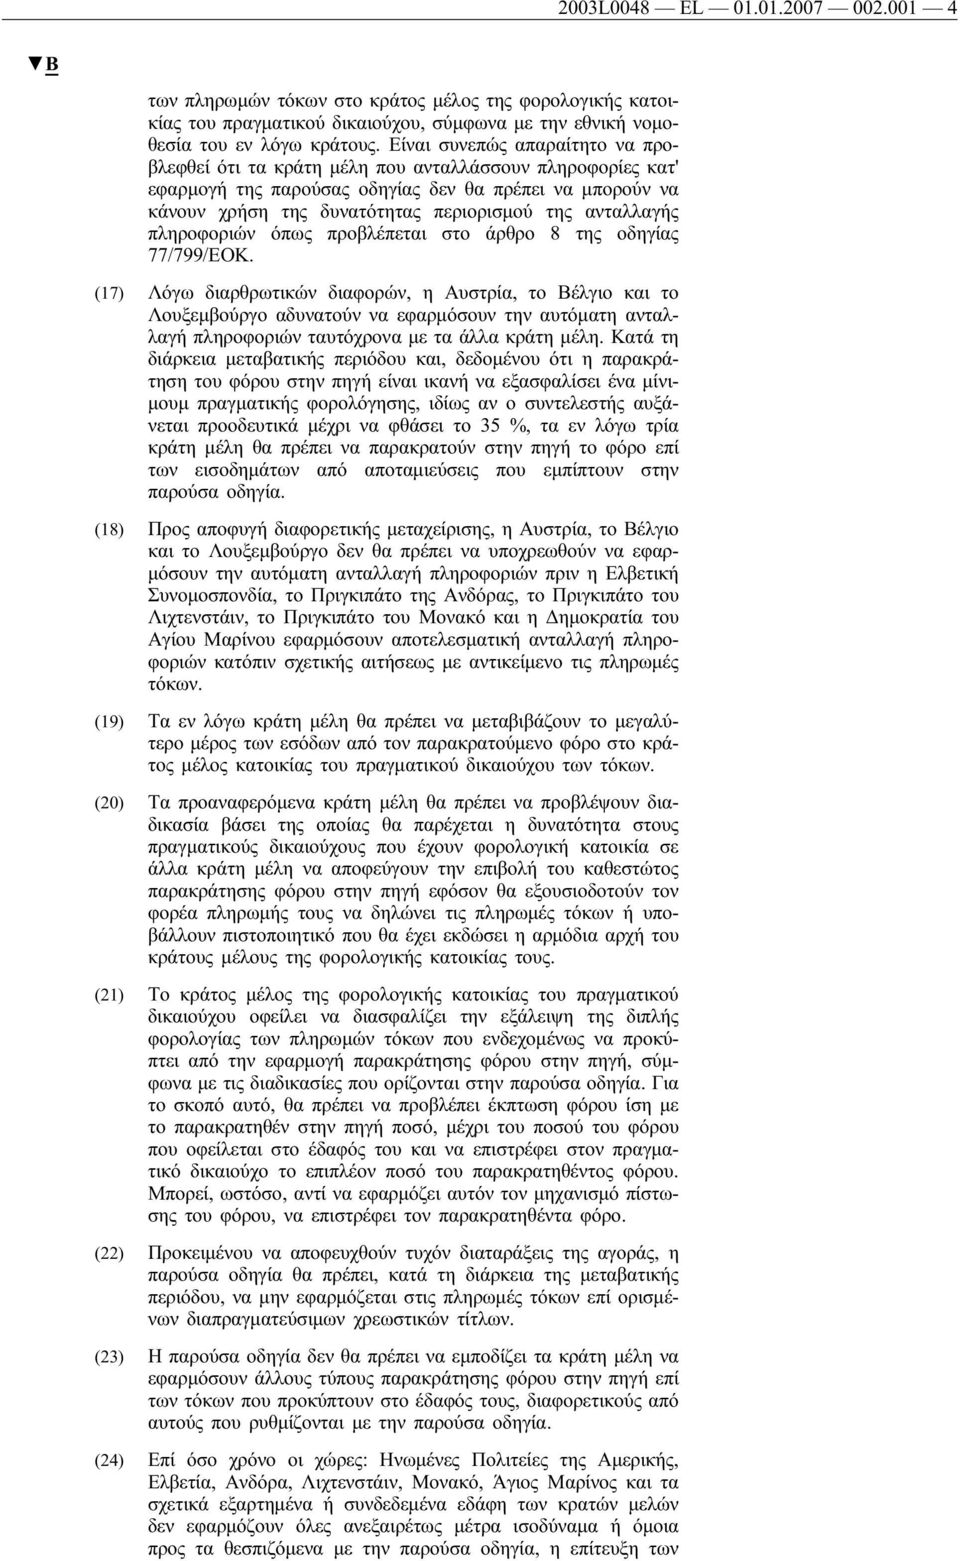 ανταλλαγής πληροφοριών όπως προβλέπεται στο άρθρο 8 της οδηγίας 77/799/ΕΟΚ.